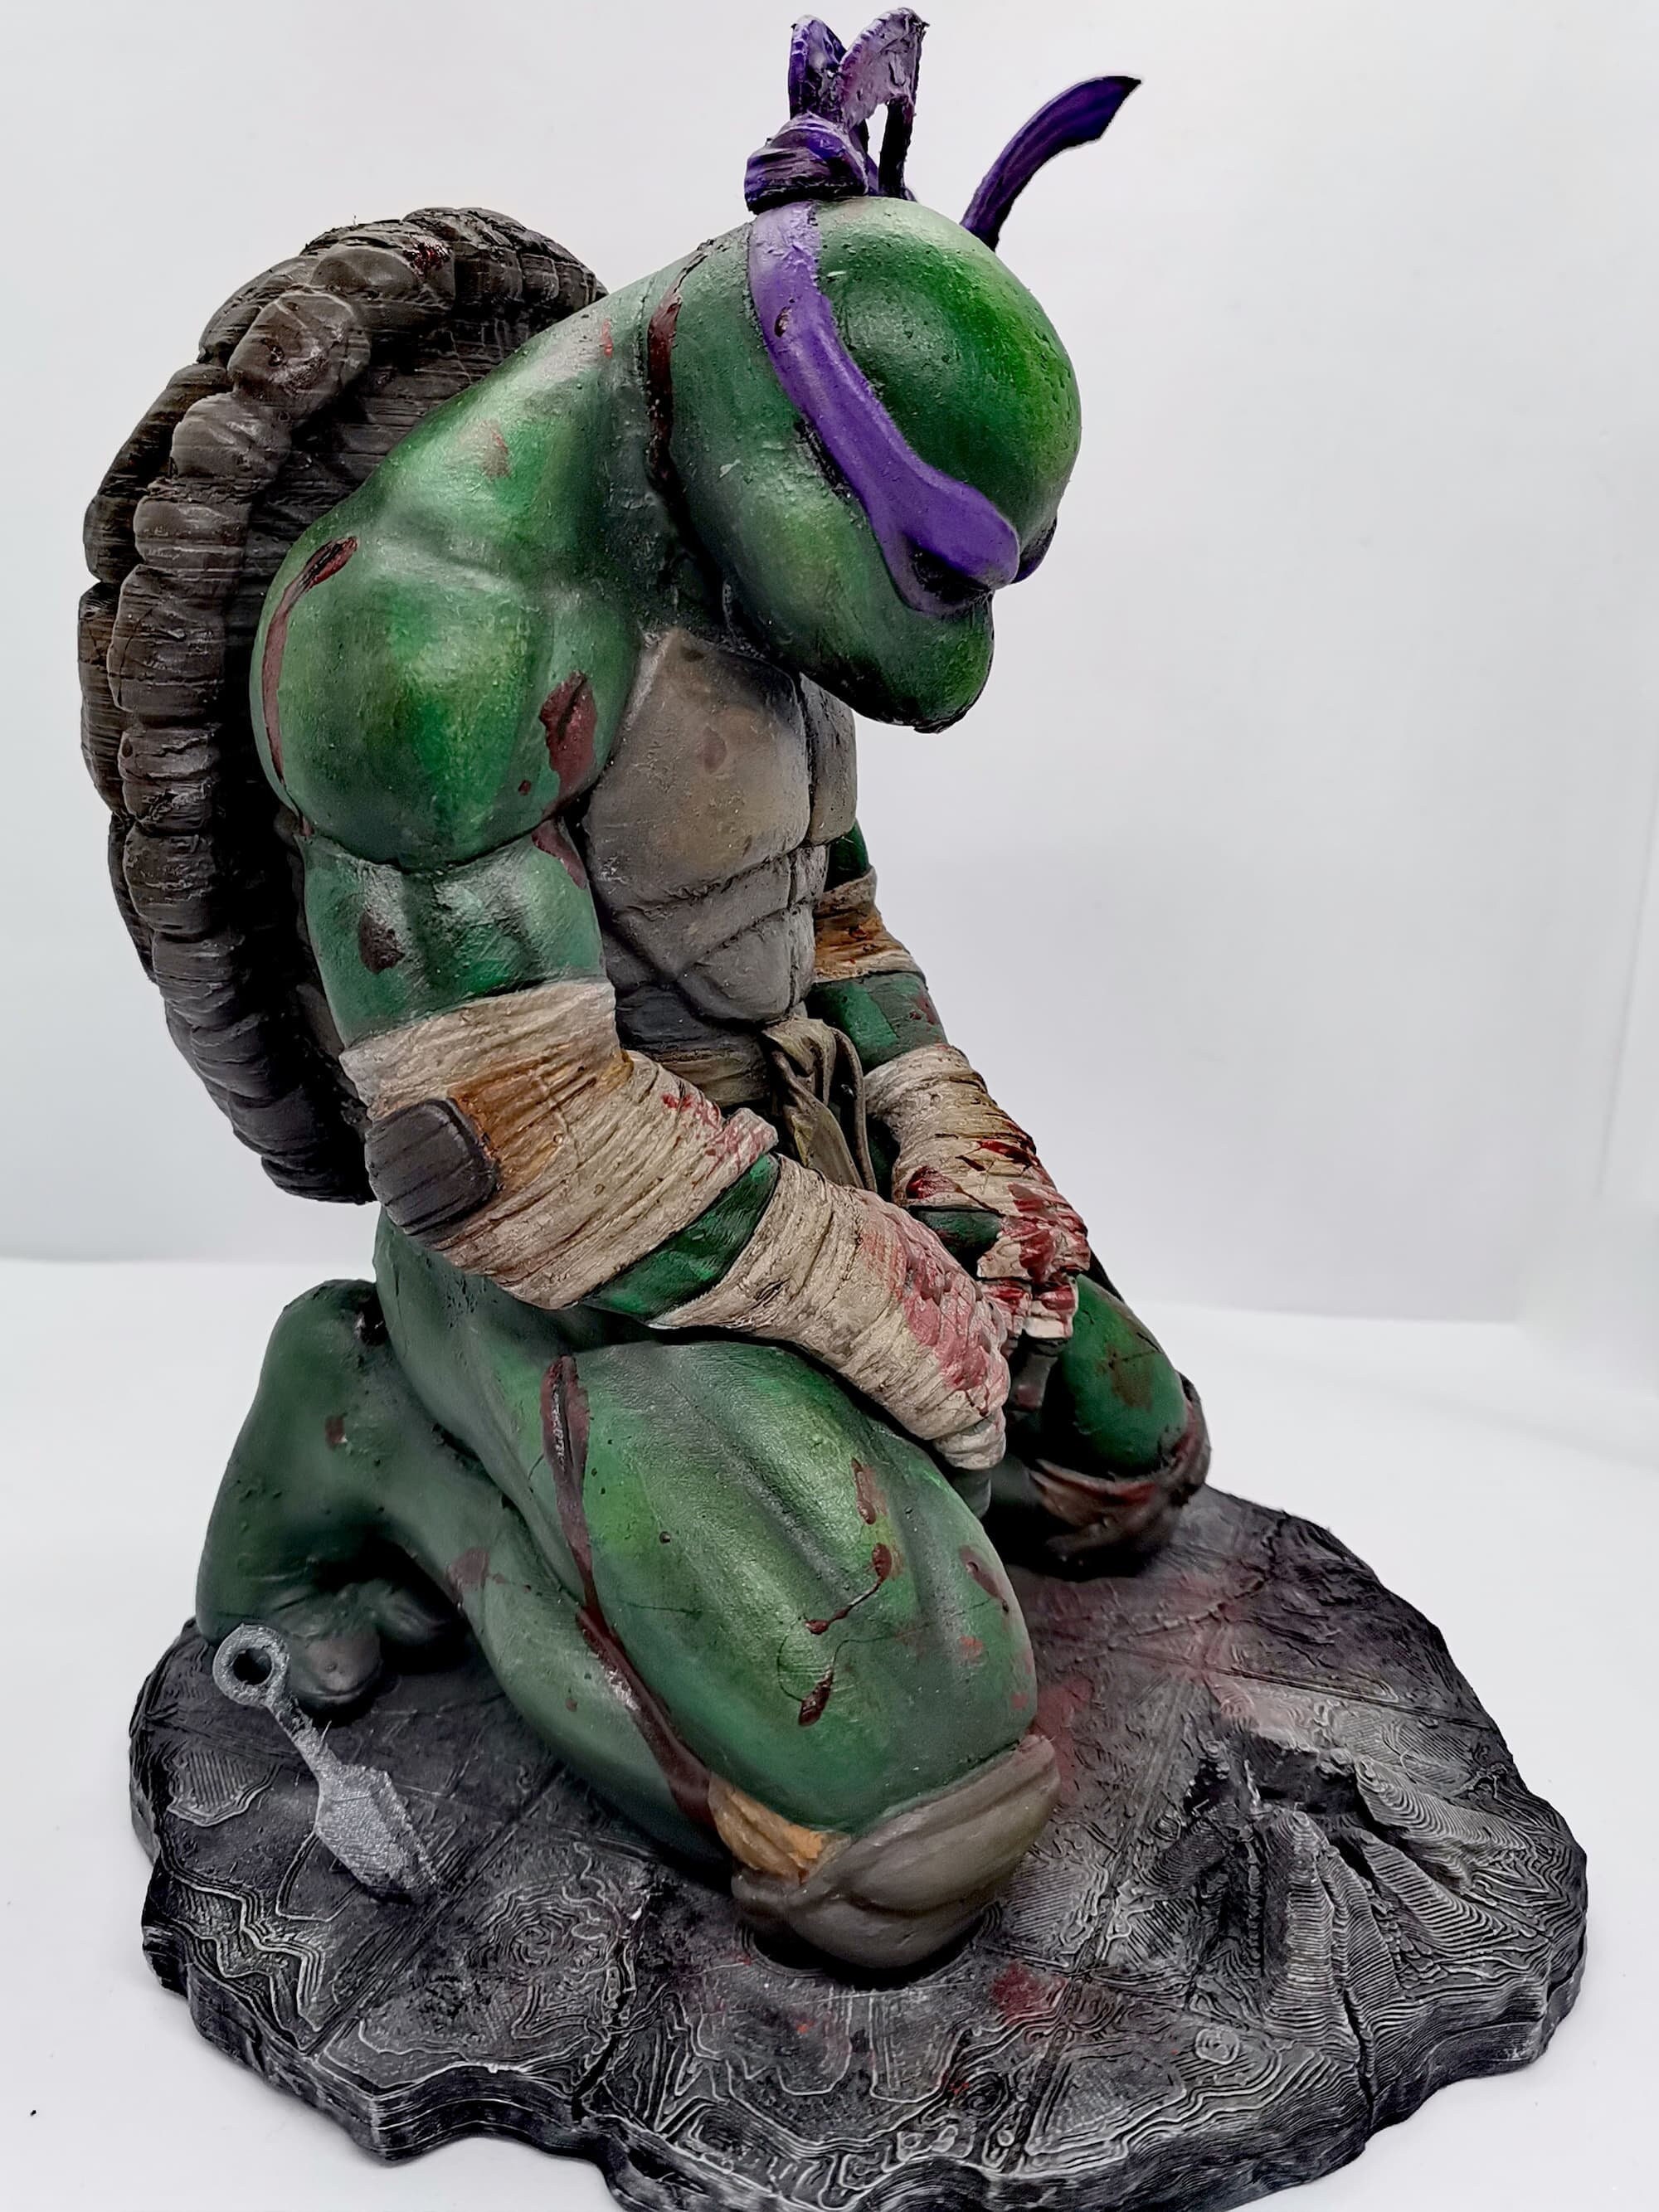 Fanart TMNT Donatello Triumphant Statue 3D model 3D printable